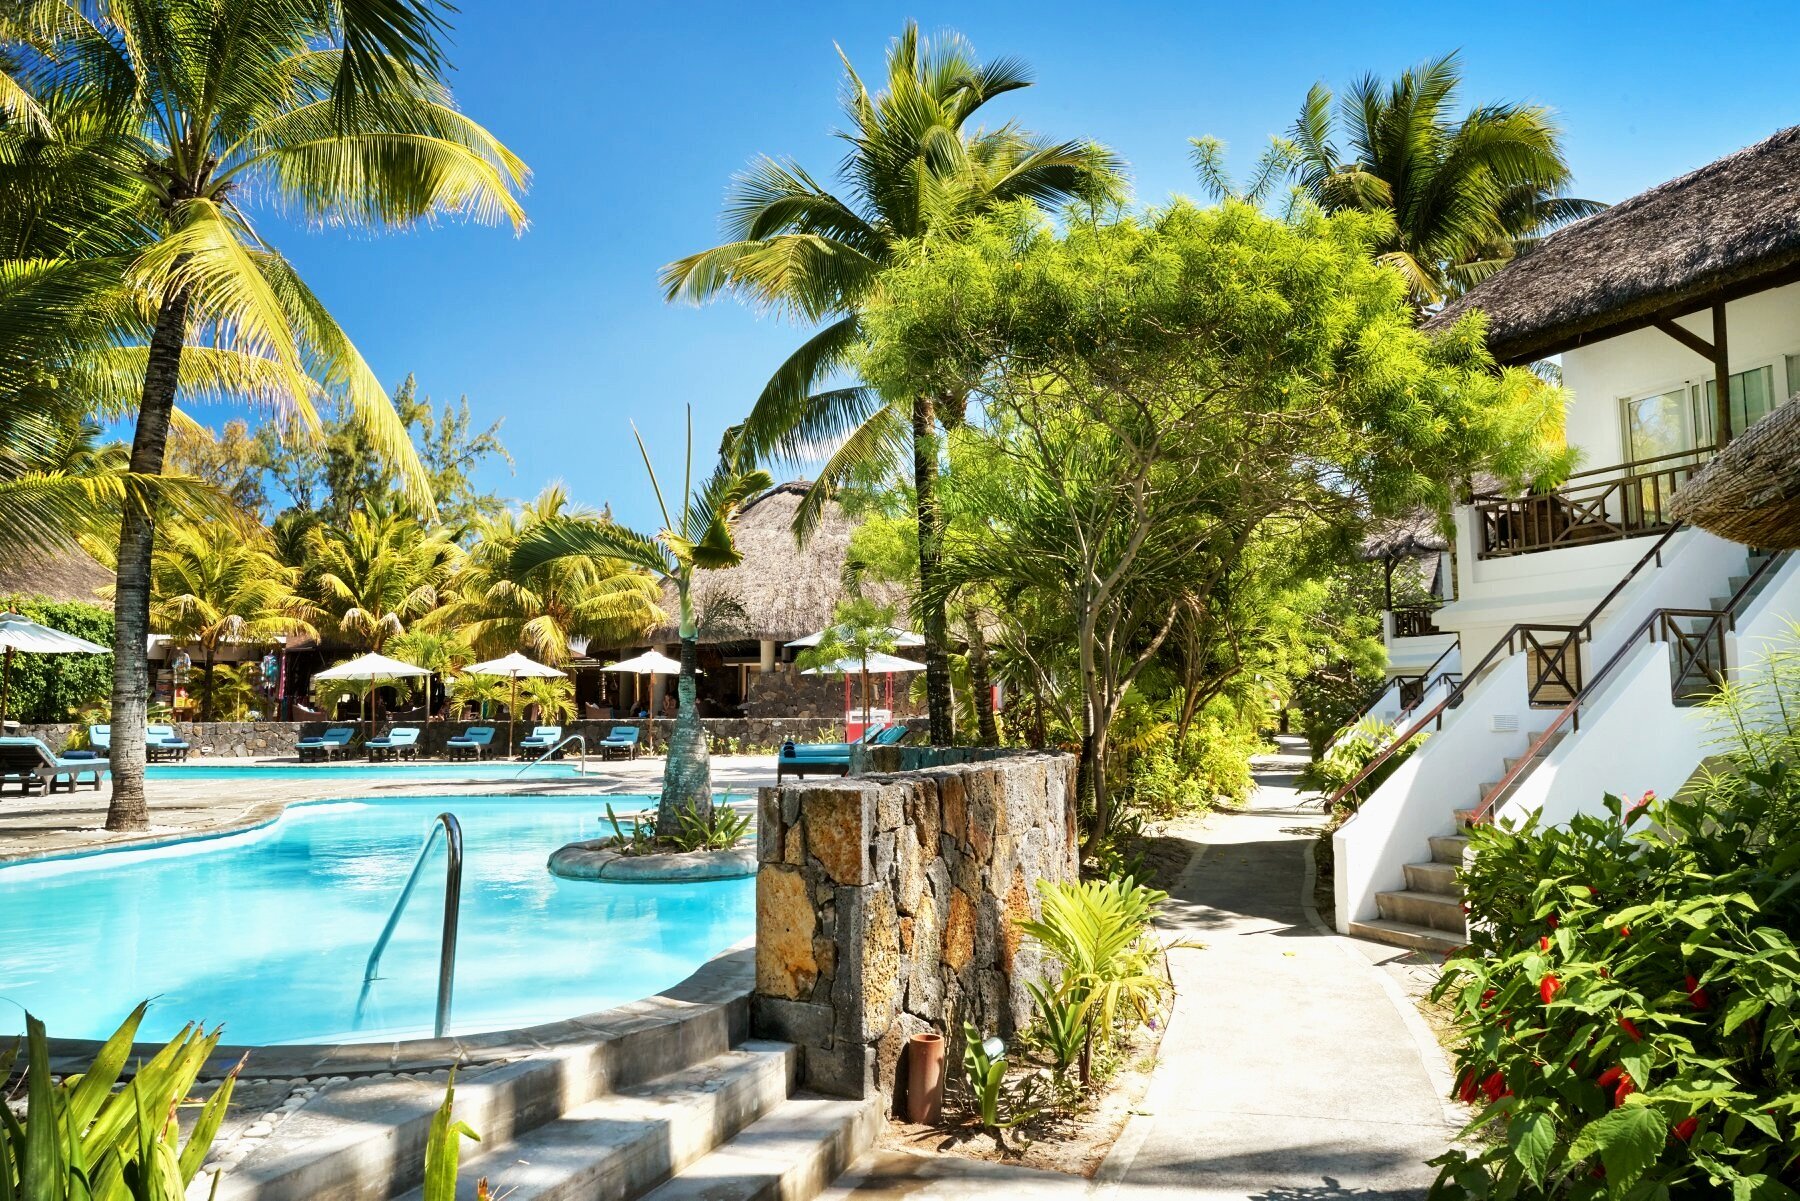 mauritius-hotel-sunrise-attitude-camere-vista-piscina-belle-mare-wadidestination.jpg